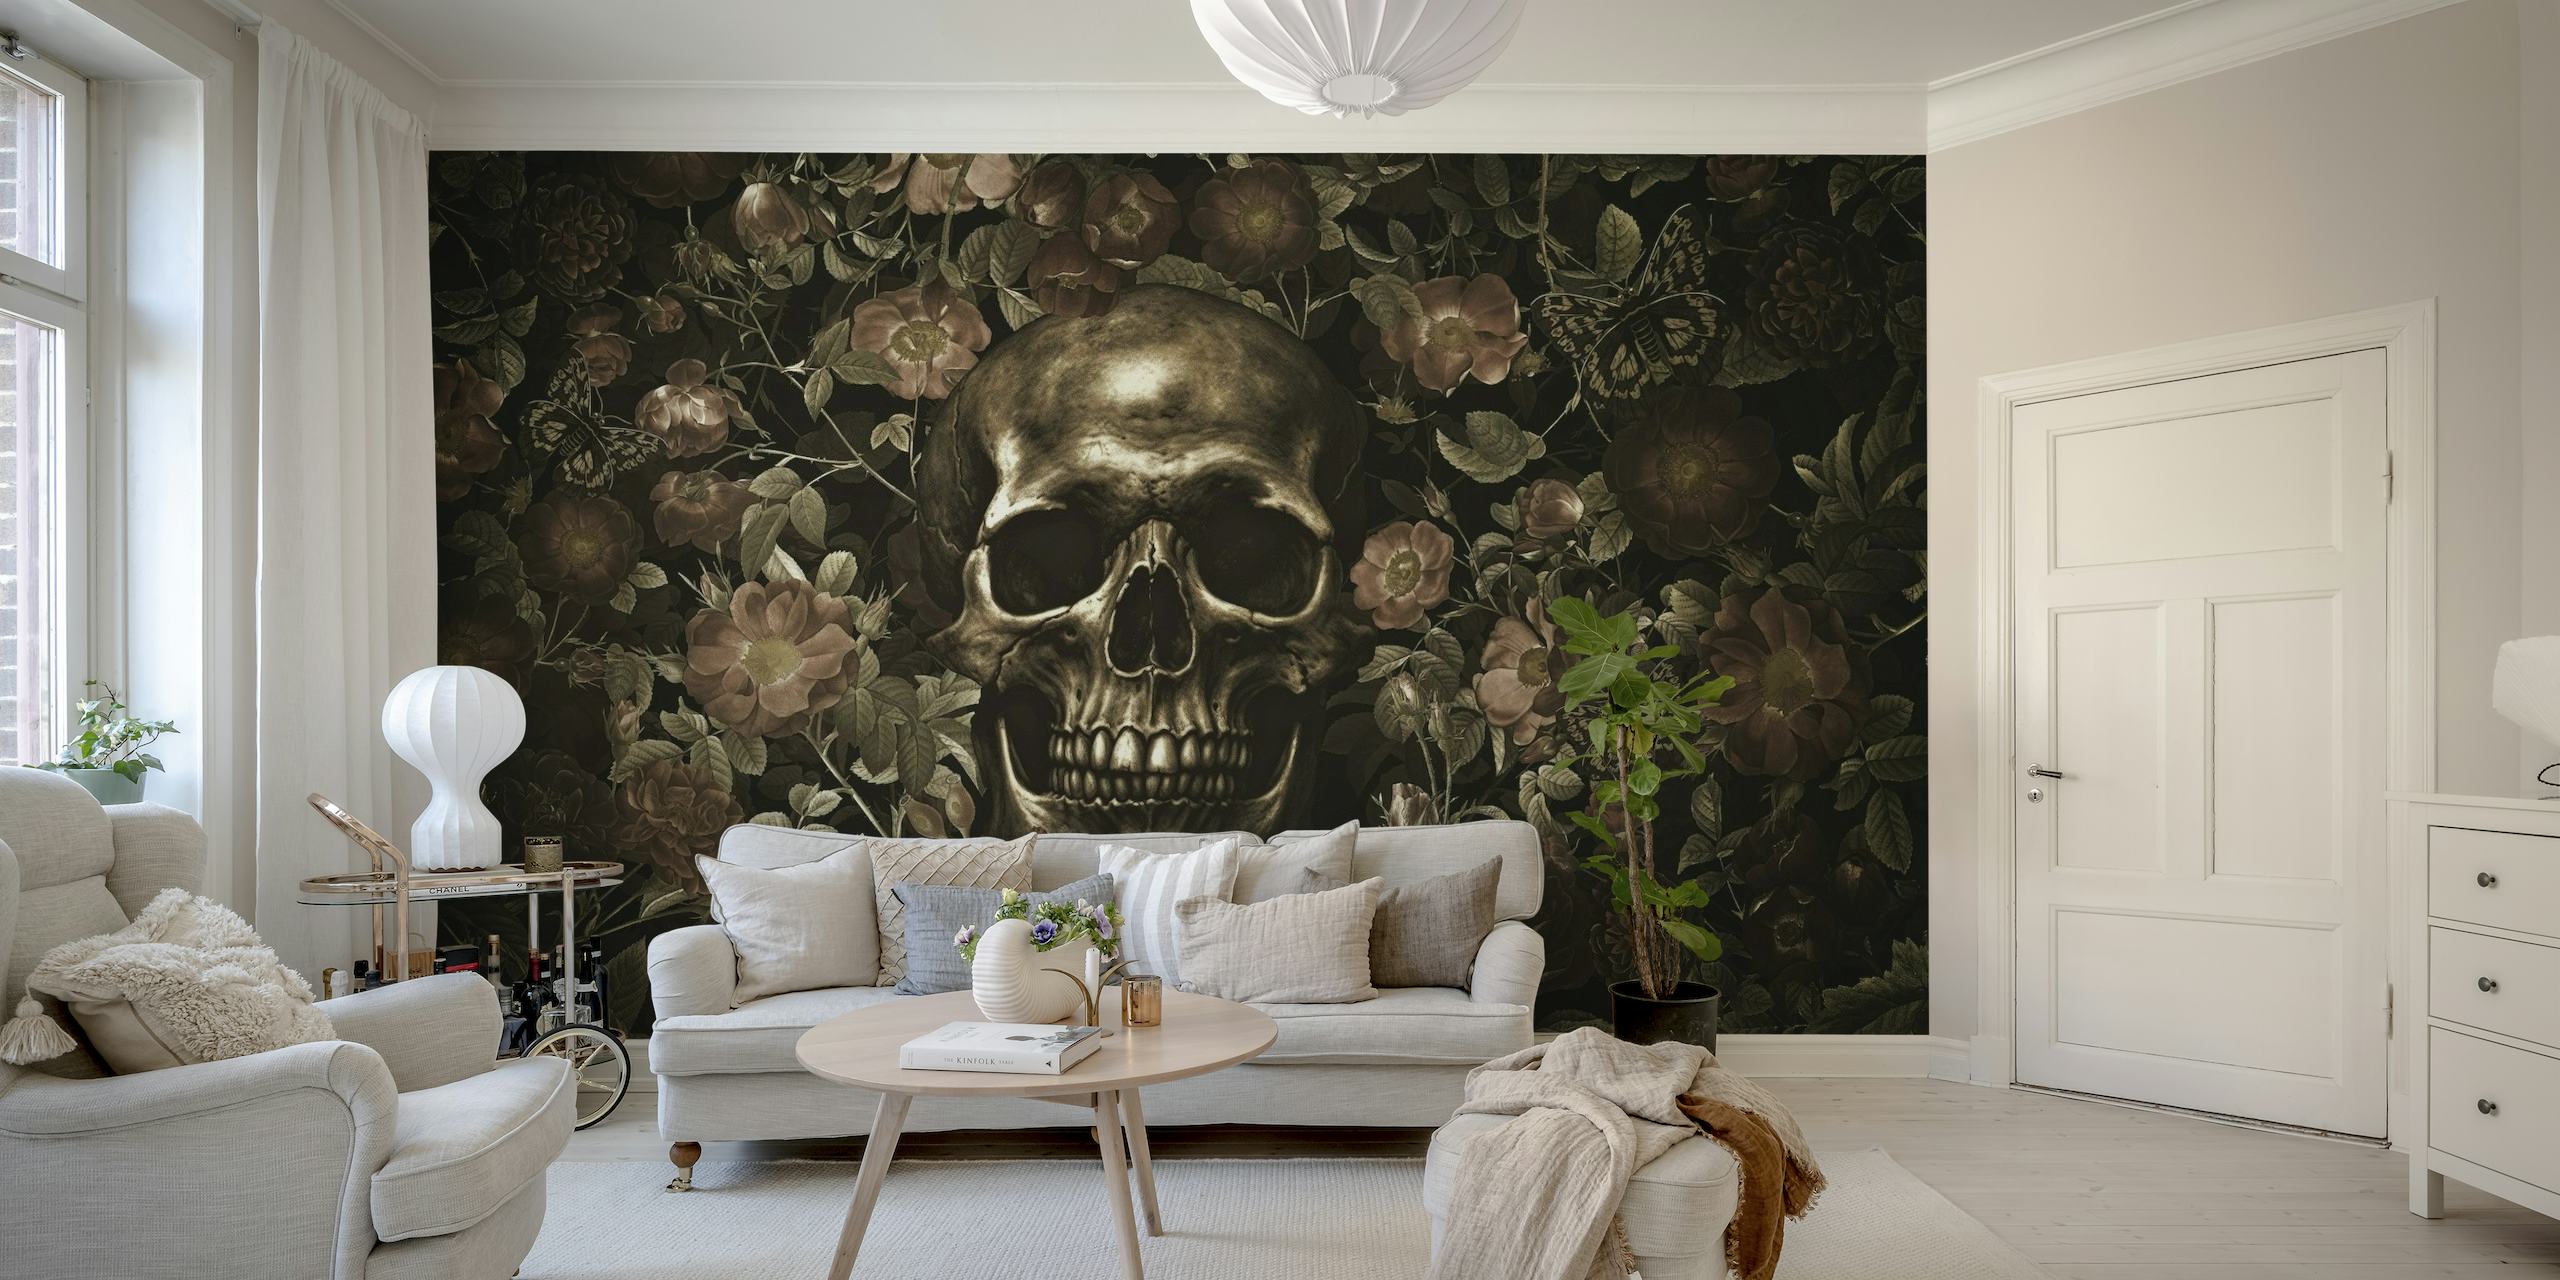 Um mural de parede de inspiração gótica com uma caveira dourada cercada por rosas escuras em flor